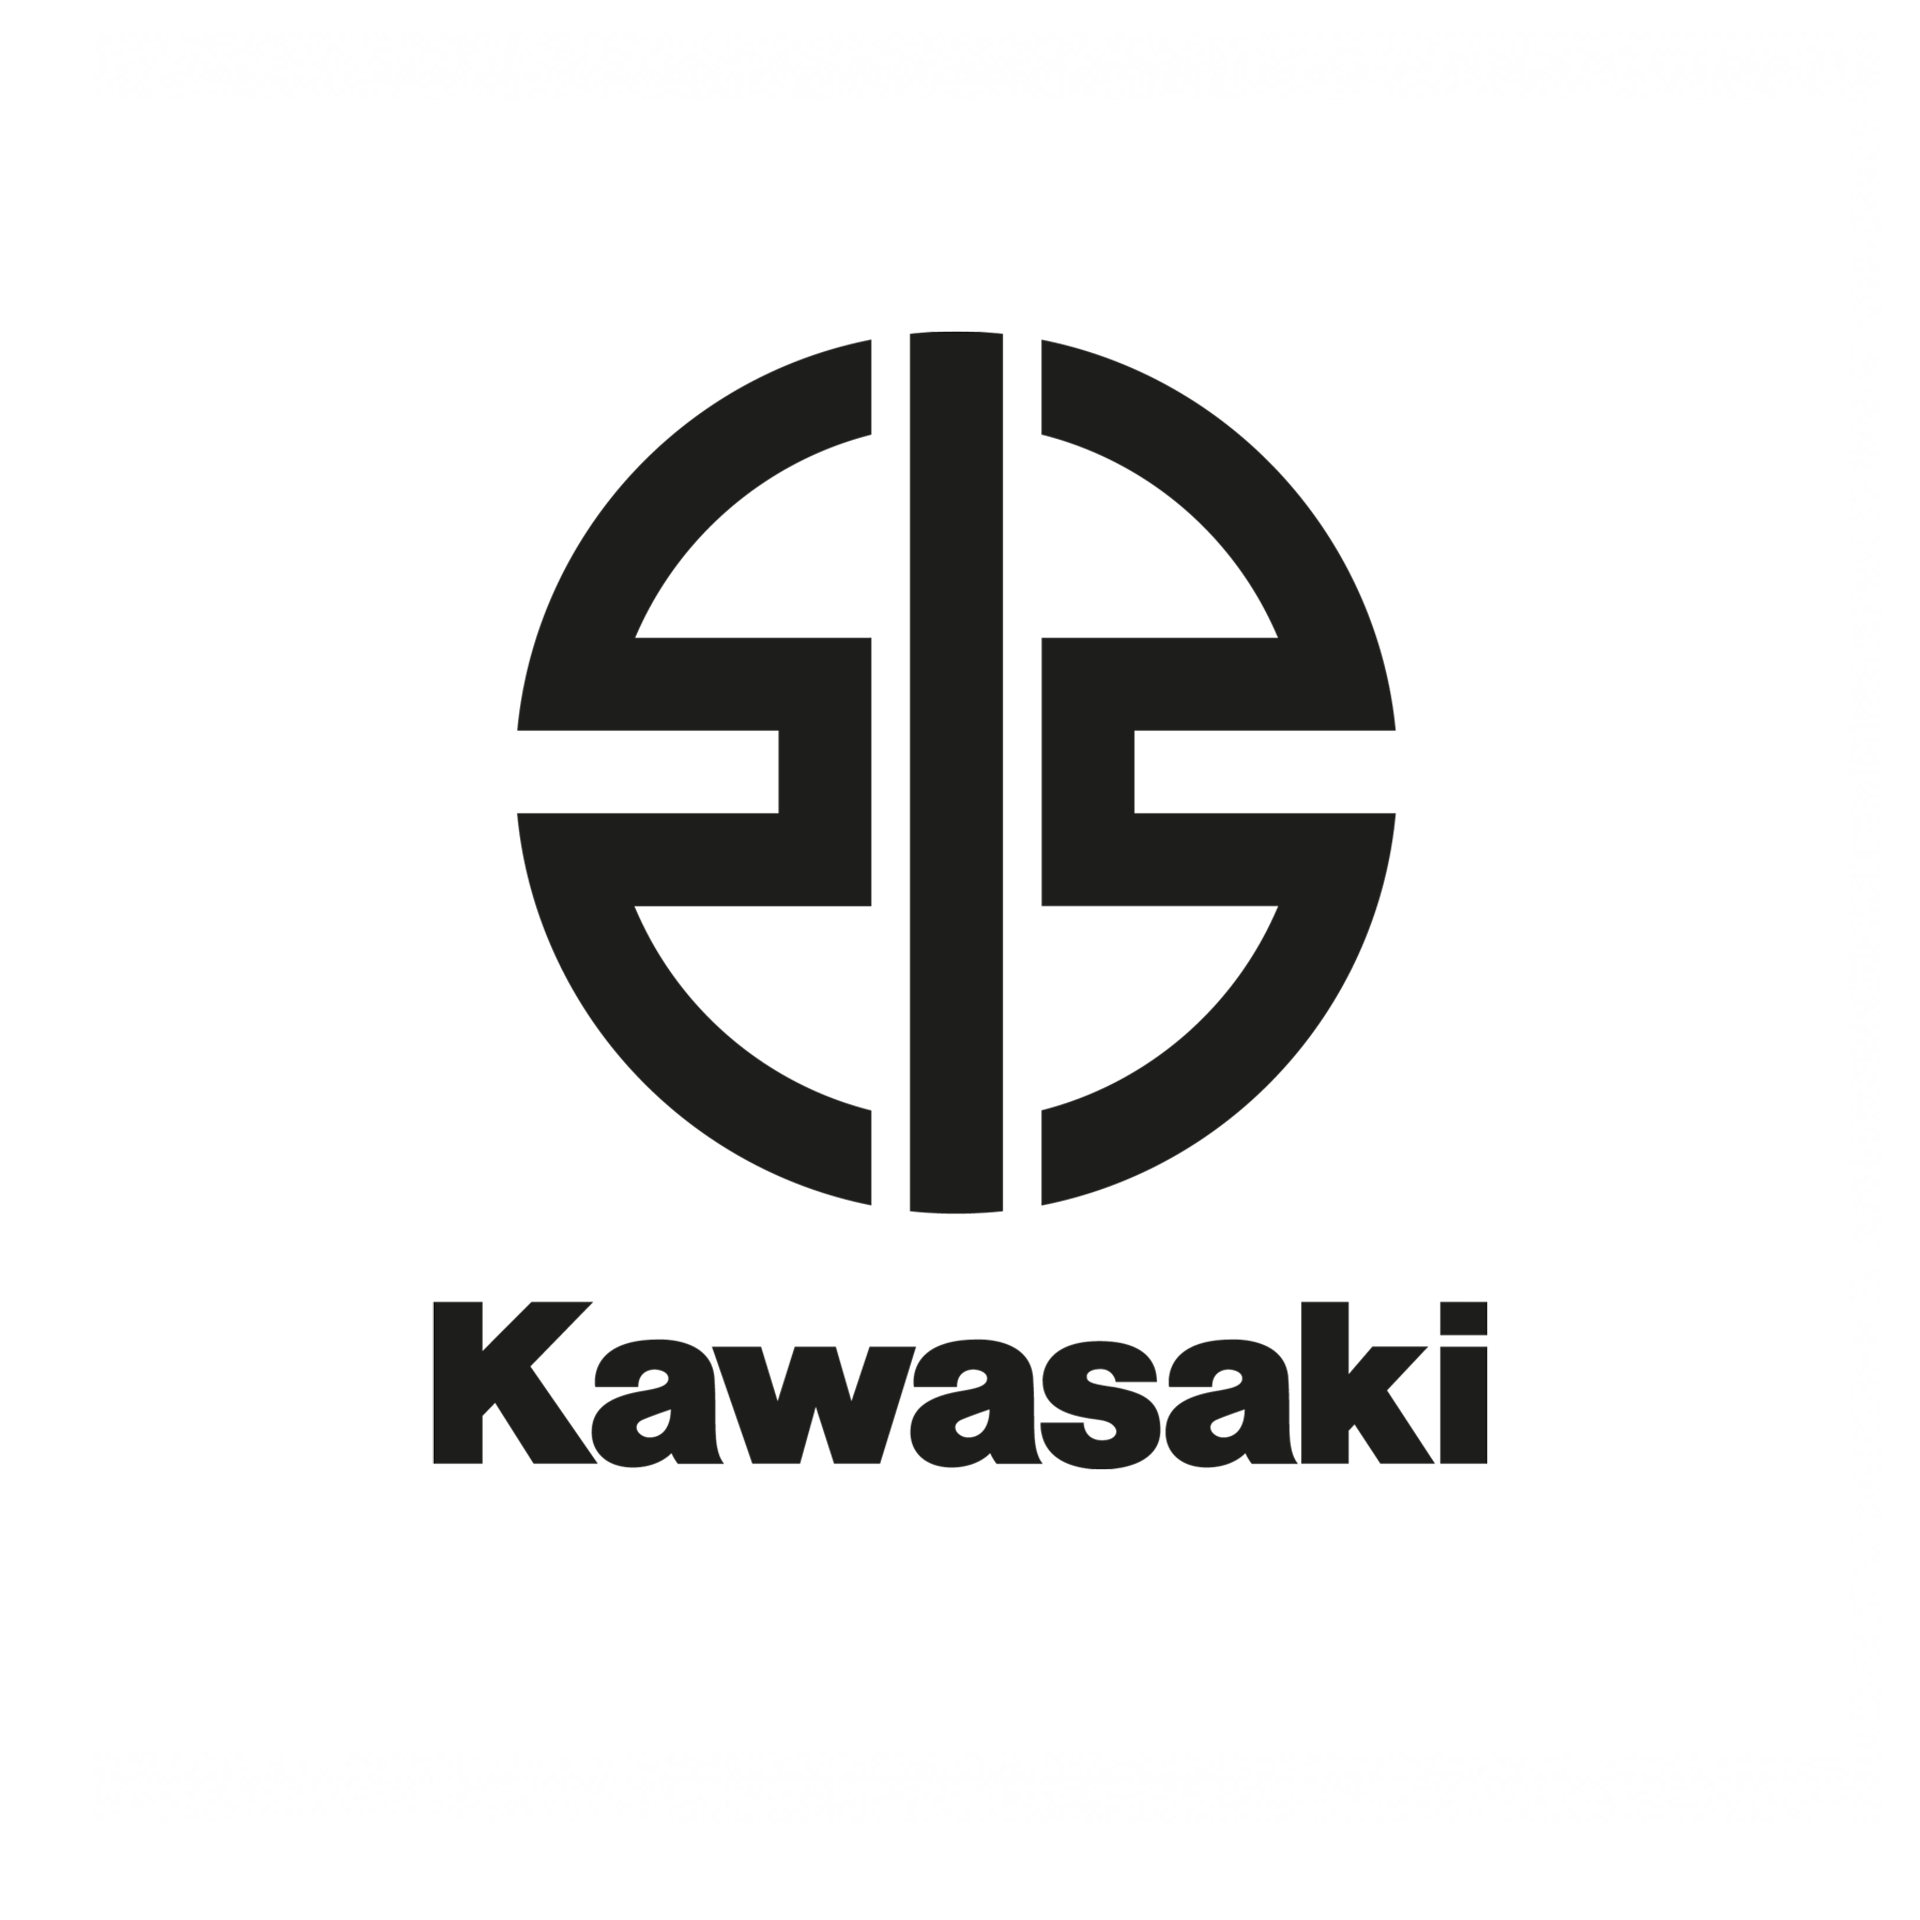 kawasakilogocolor